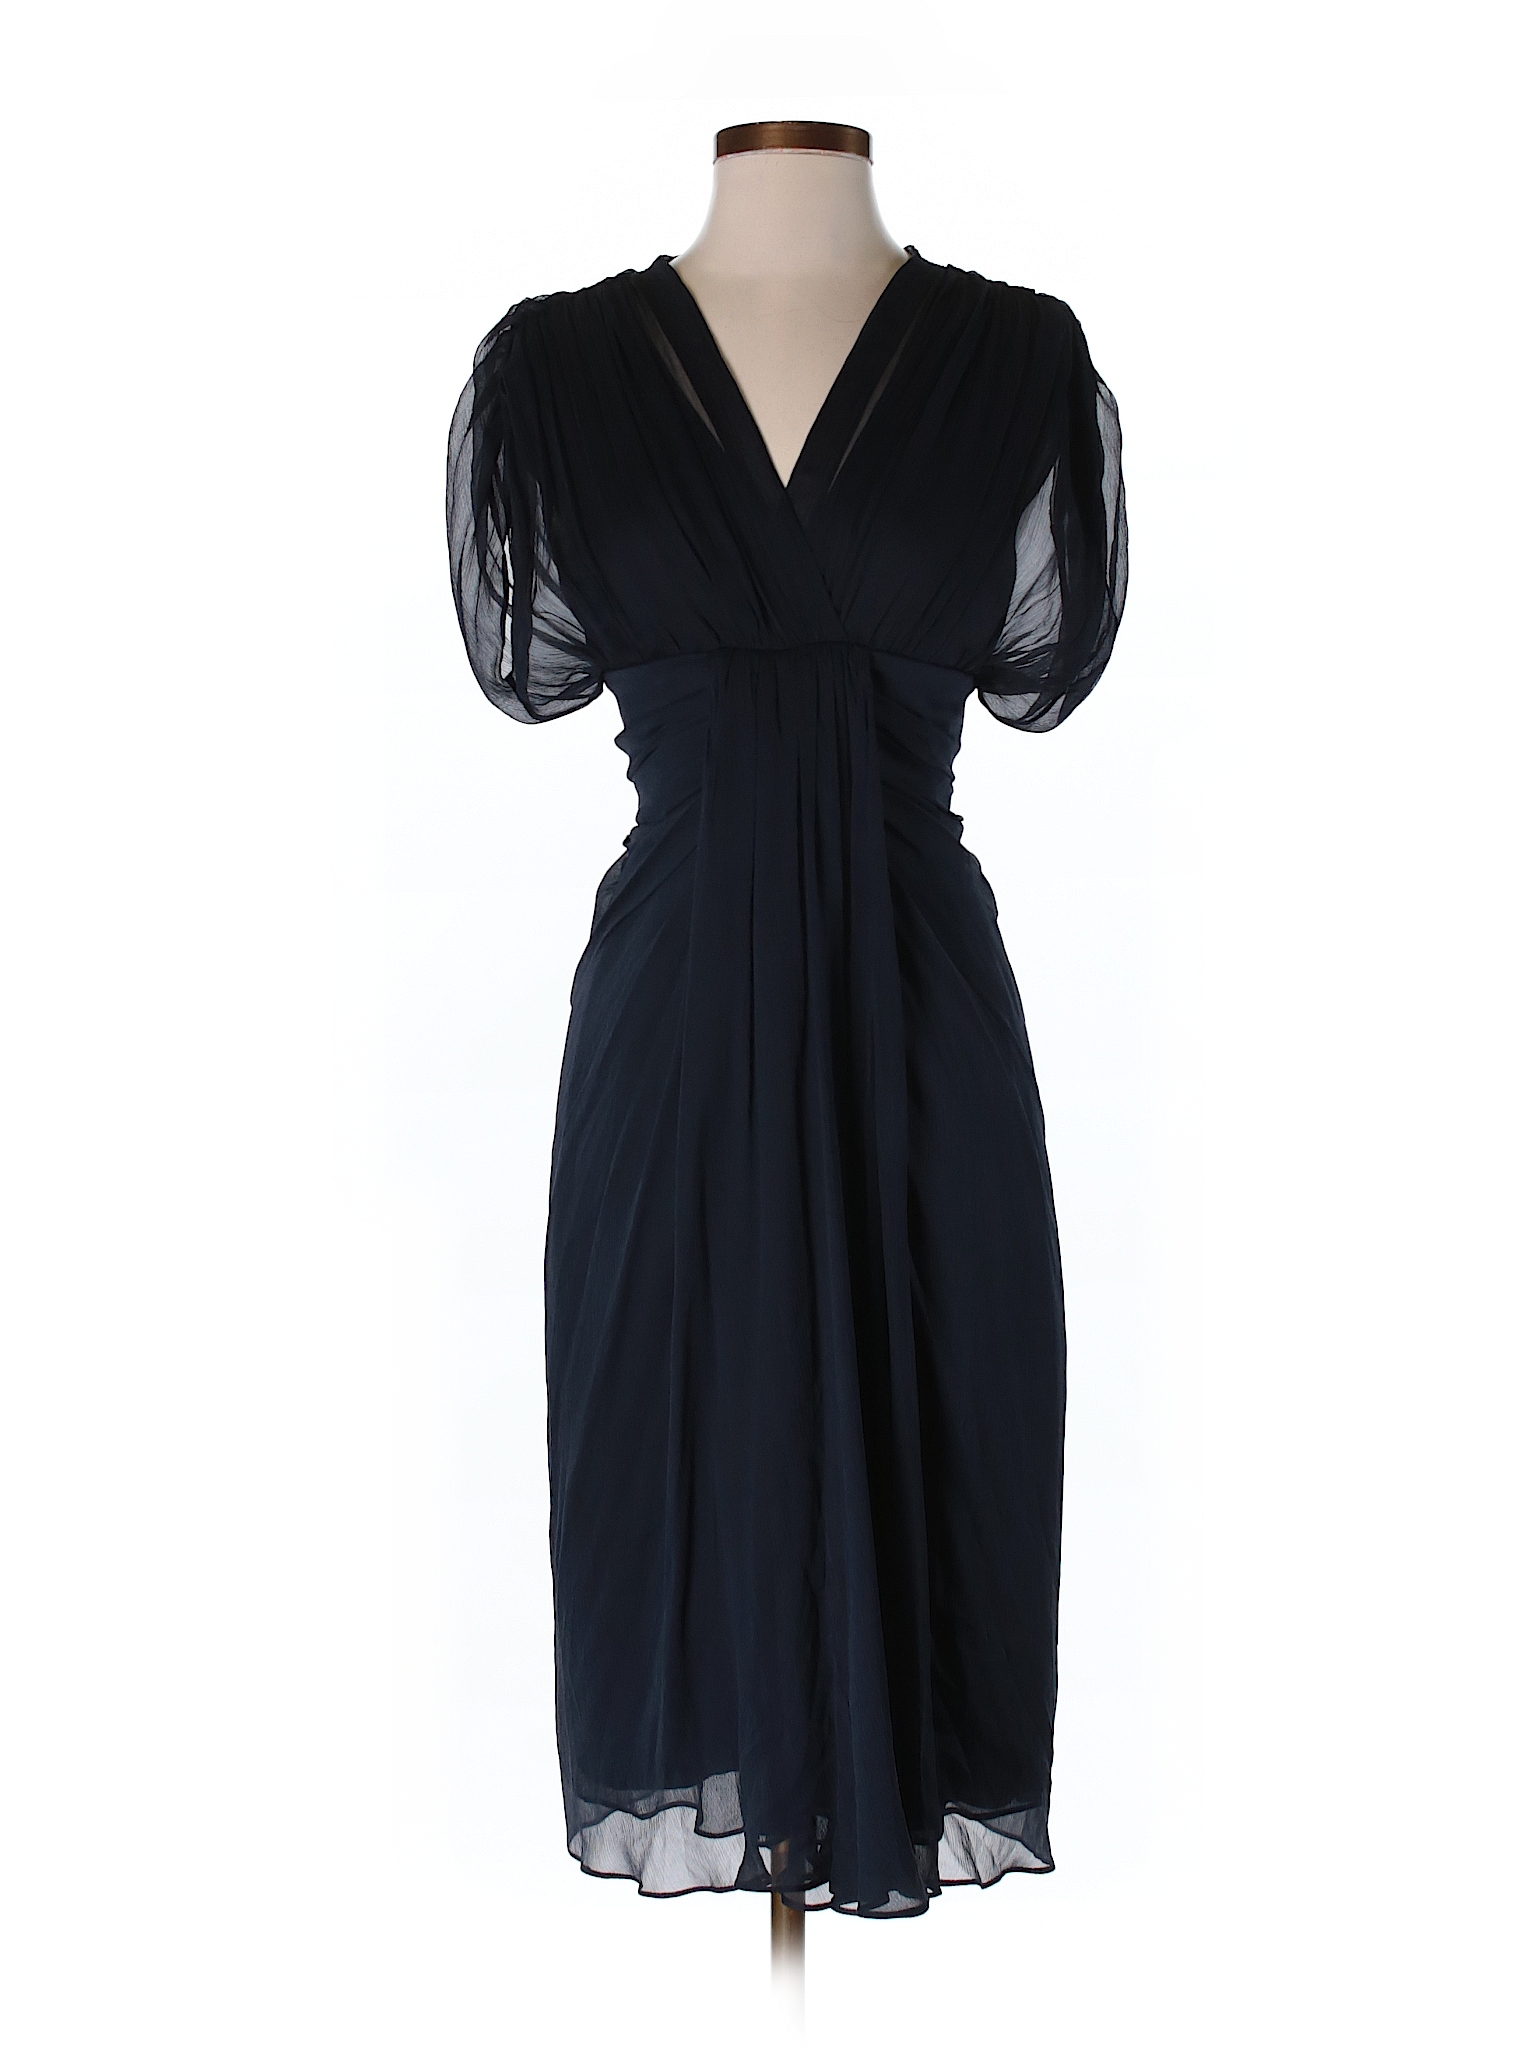 Diane von Furstenberg 100% Silk Solid Navy Blue Silk Dress Size 4 - 80% ...